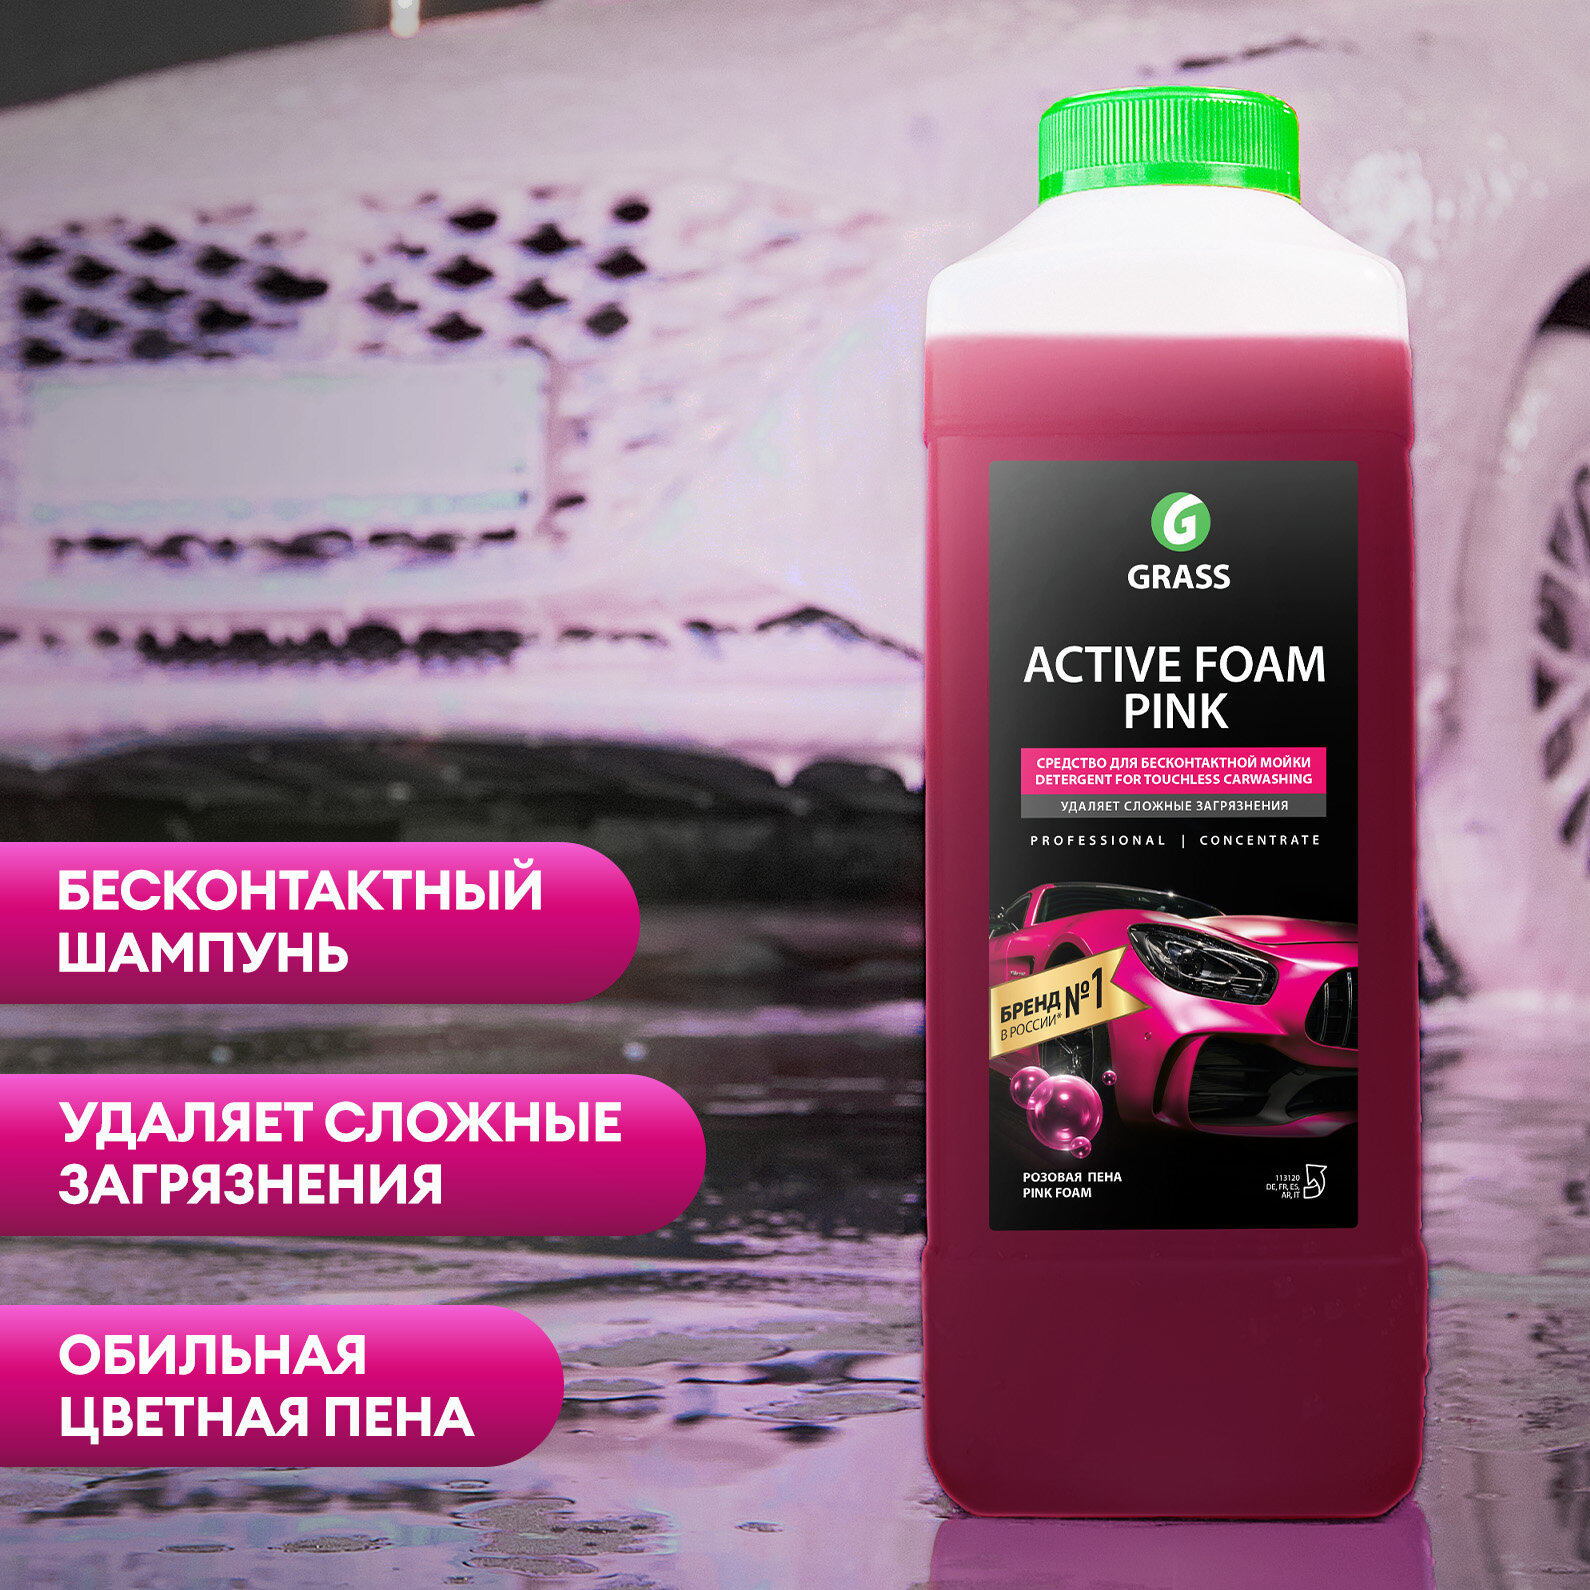 Активная пена/ Автошампунь / Шампунь для мытья автомобиля Grass Active Foam Pink, розовая пена, 1000 мл.